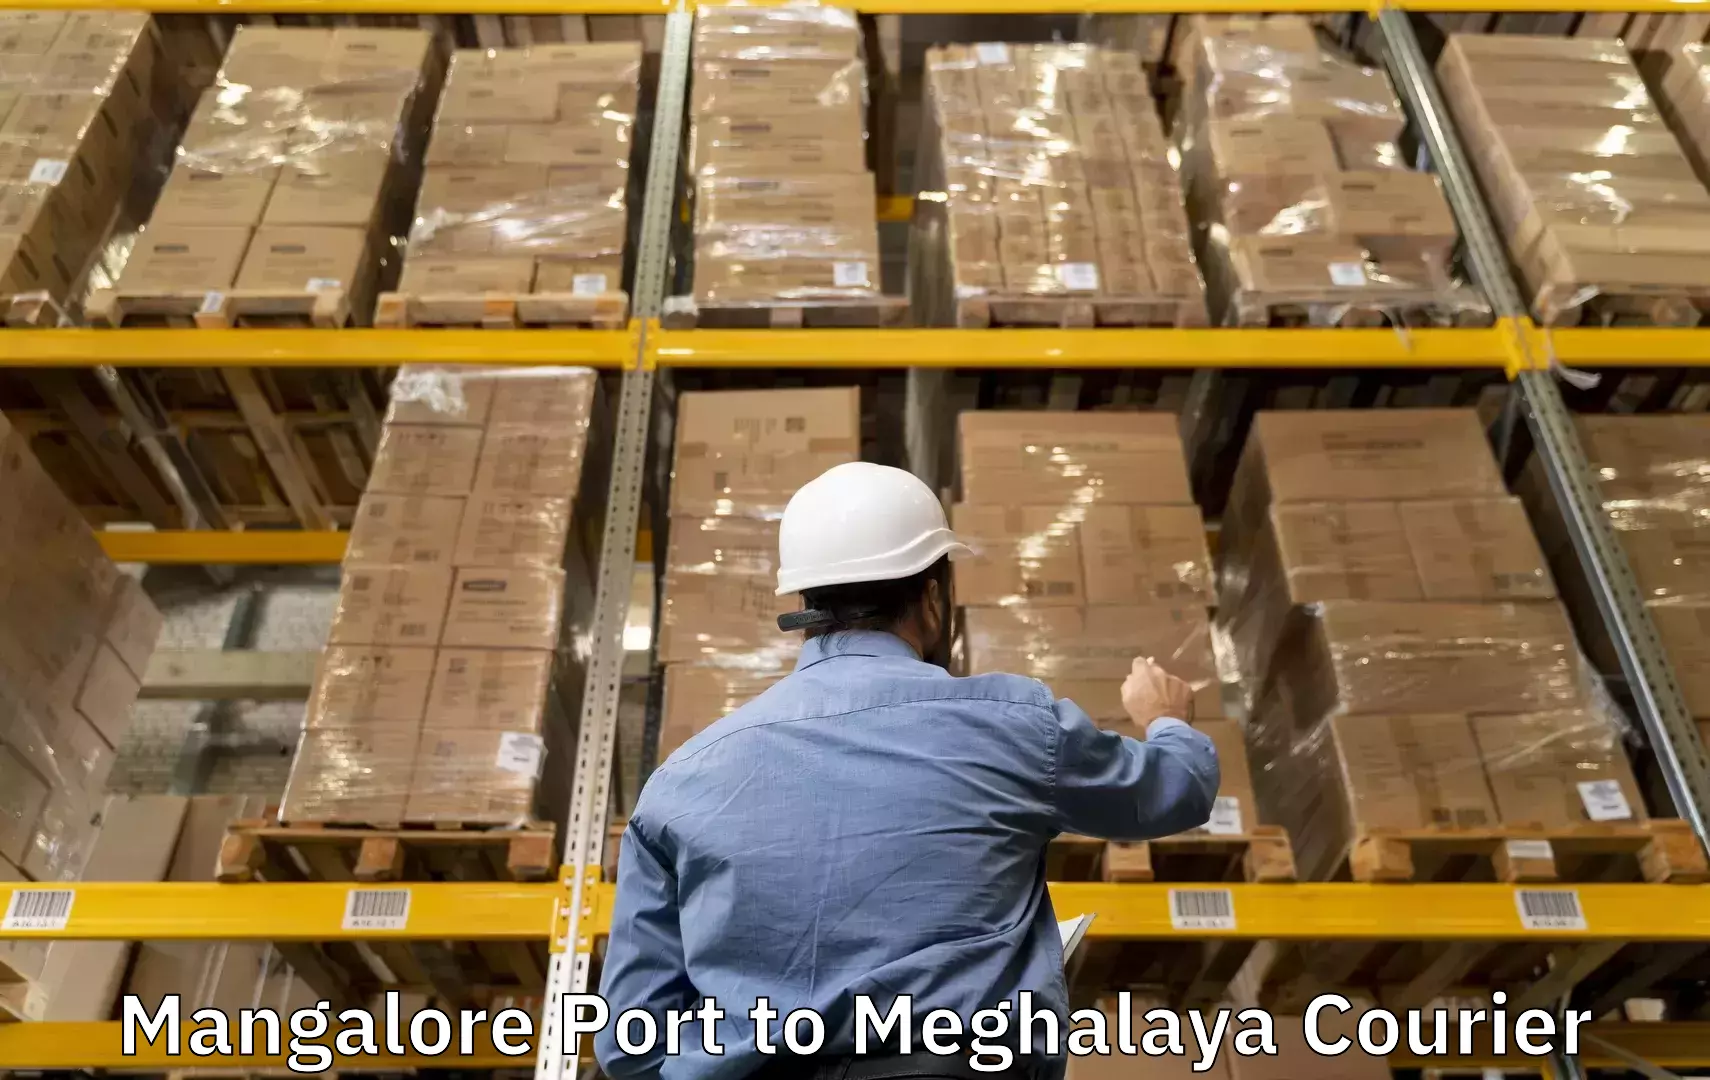 Baggage transport estimate Mangalore Port to Meghalaya